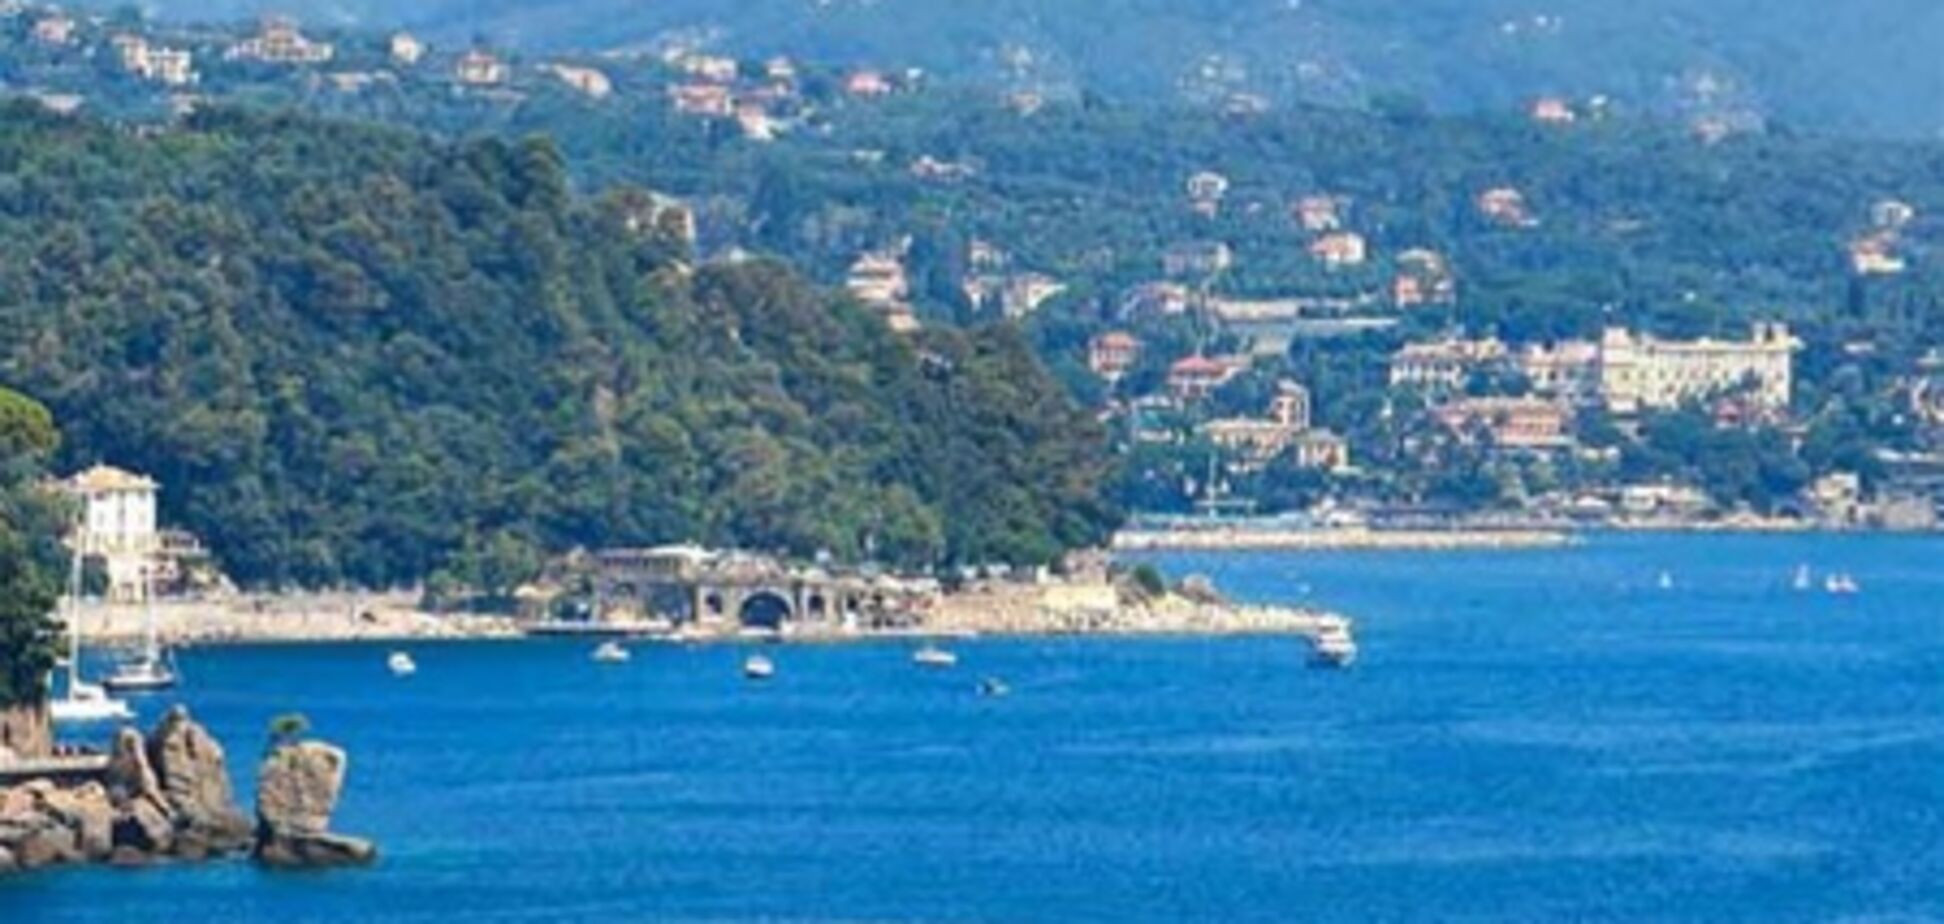 Отели Baglioni в Италии организуют морские круизы